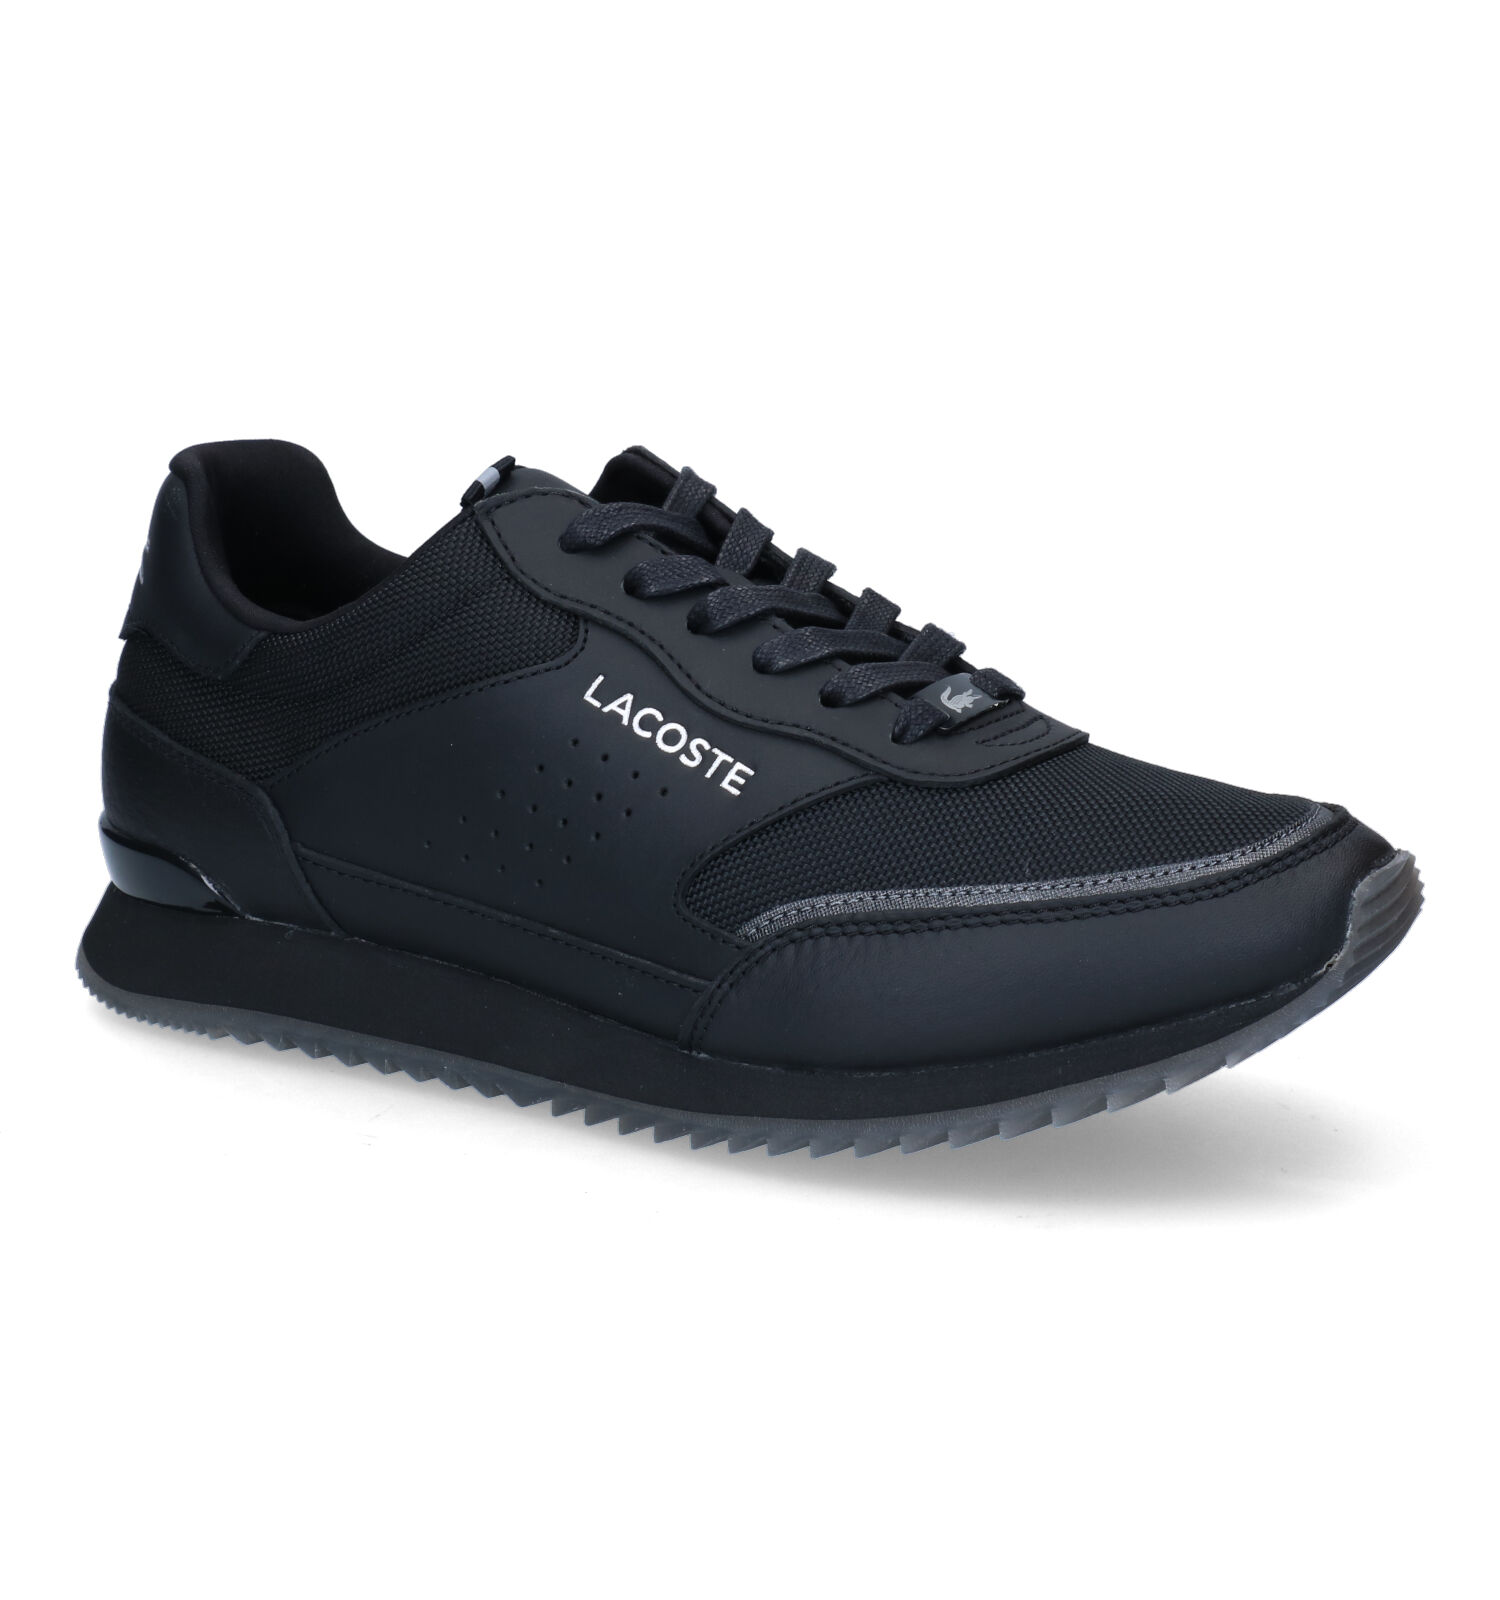 Partner Luxe SMA Zwarte Sneakers | Heren schoenen